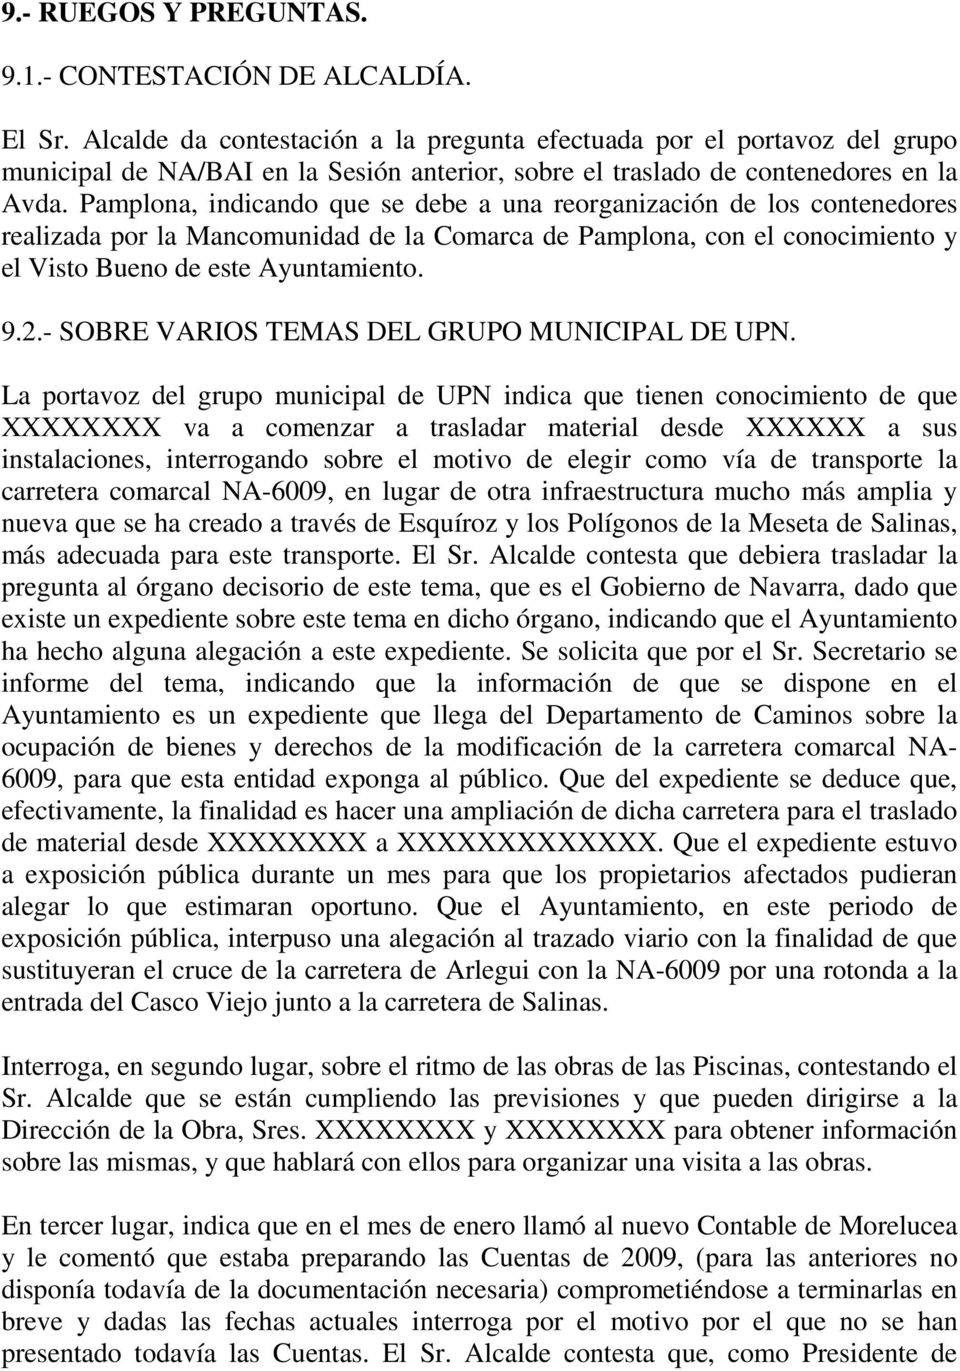 Pamplona, indicando que se debe a una reorganización de los contenedores realizada por la Mancomunidad de la Comarca de Pamplona, con el conocimiento y el Visto Bueno de este Ayuntamiento. 9.2.